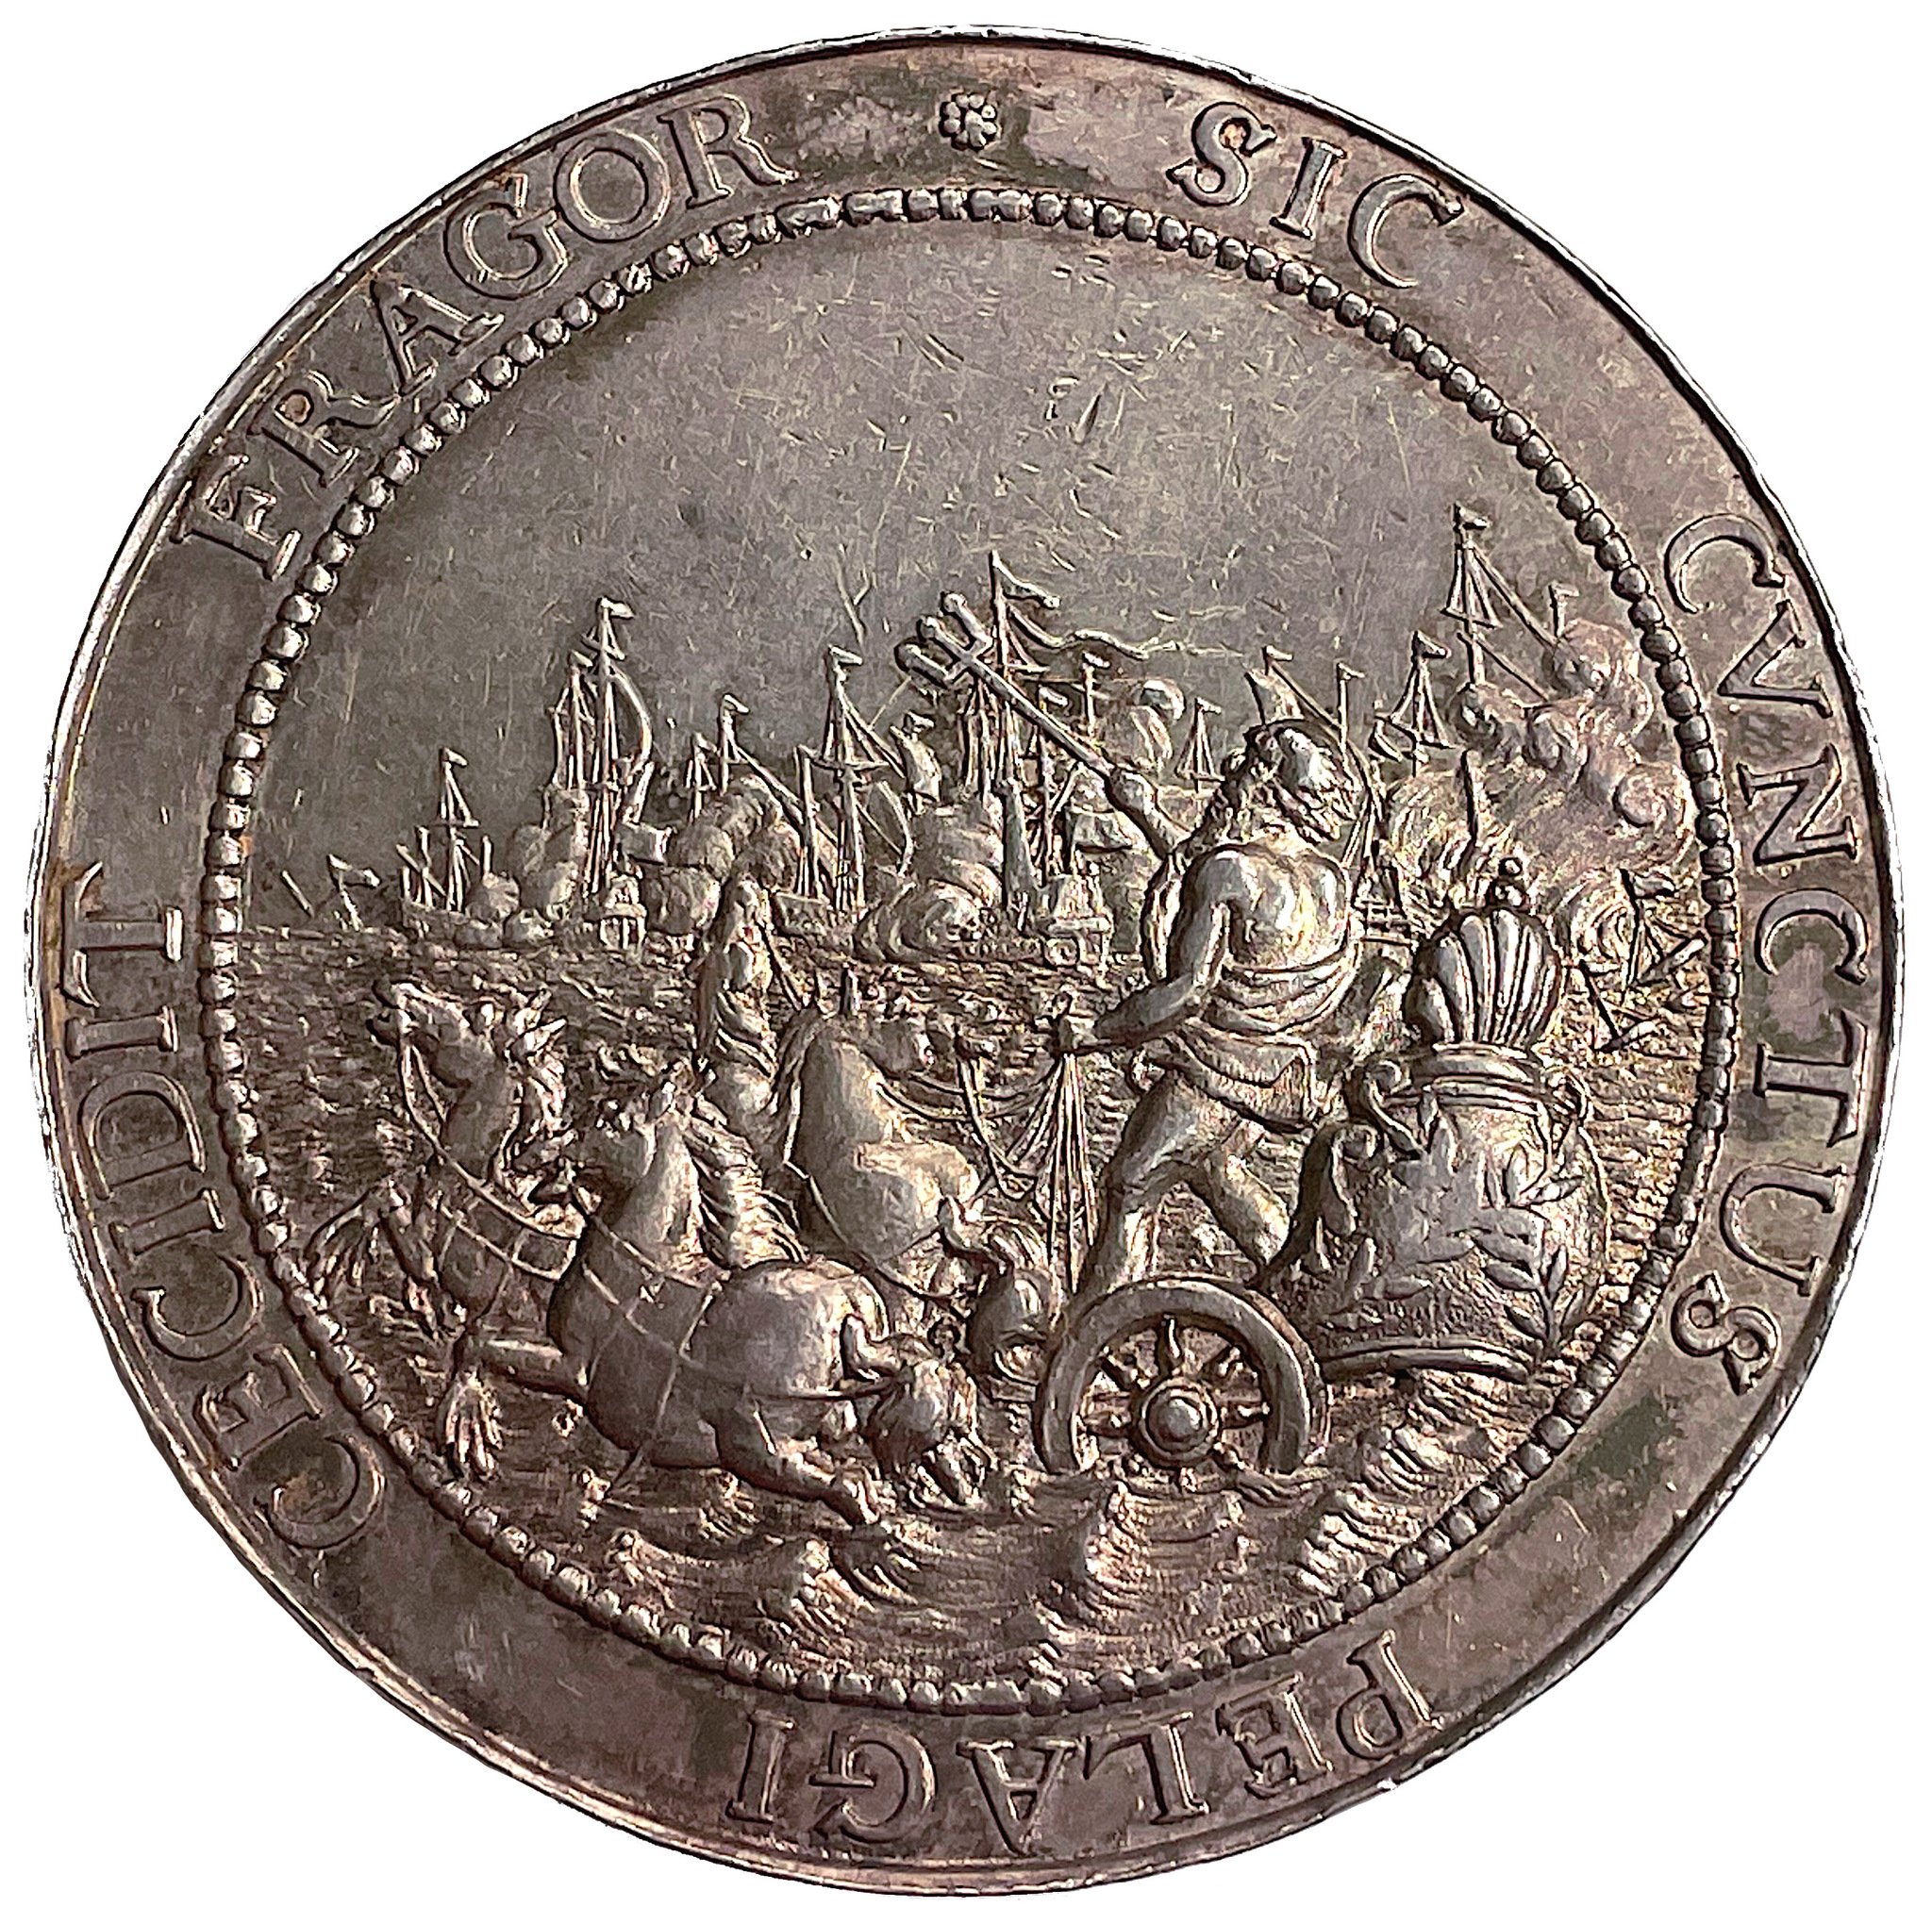 Karl XI - Freden i Breda den 31 juli 1667 av Jurian Georg Pool